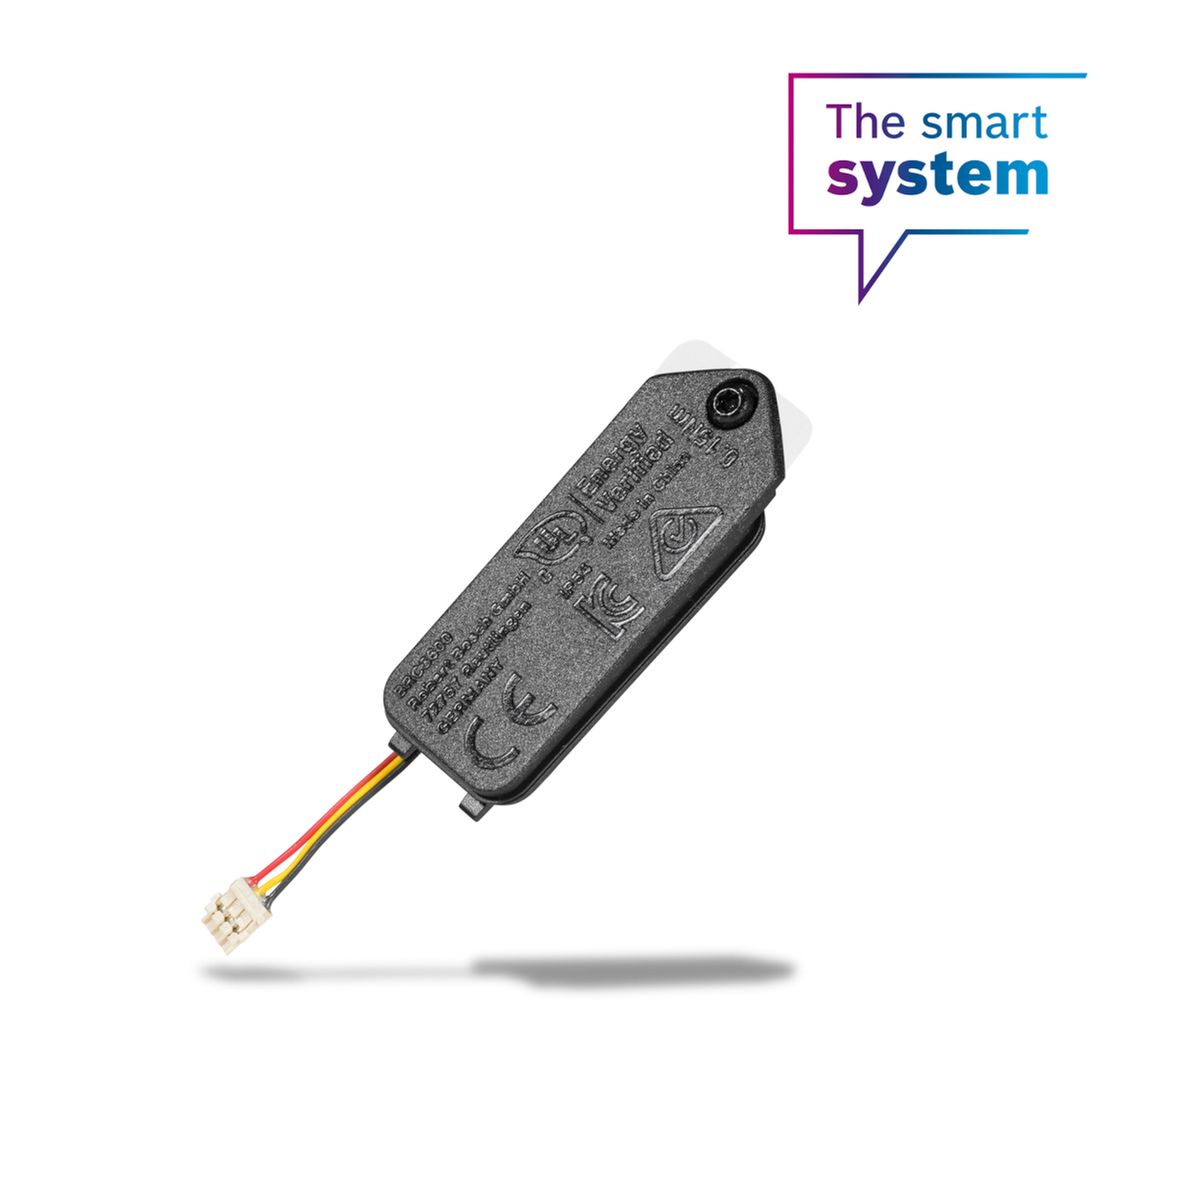 Bosch Akku LED Remote (Smart System)